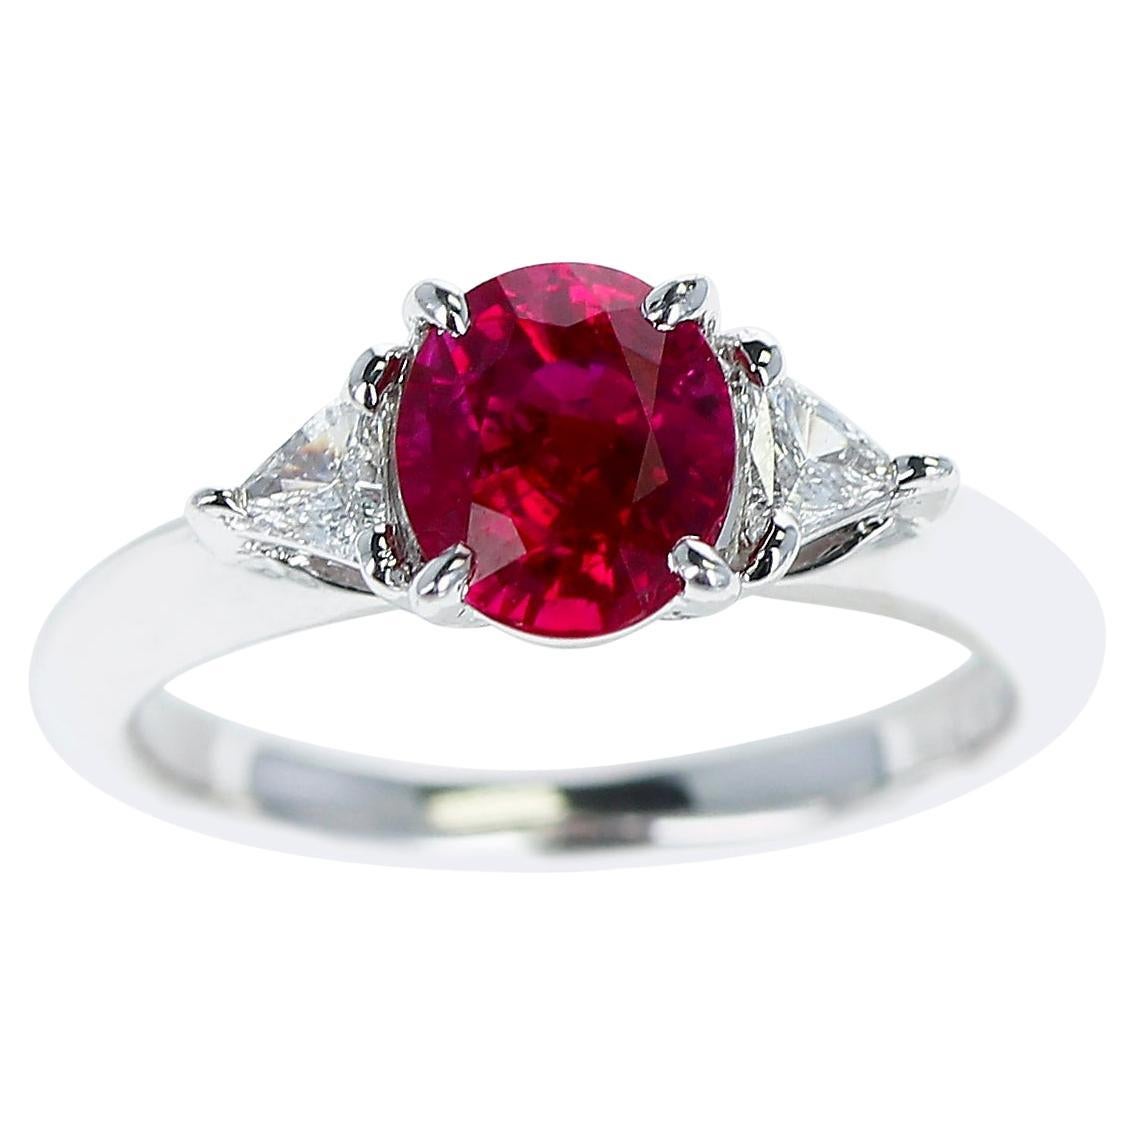 AGL-zertifizierter 1,19 ct. Ring mit Rubin und Diamanten, PT